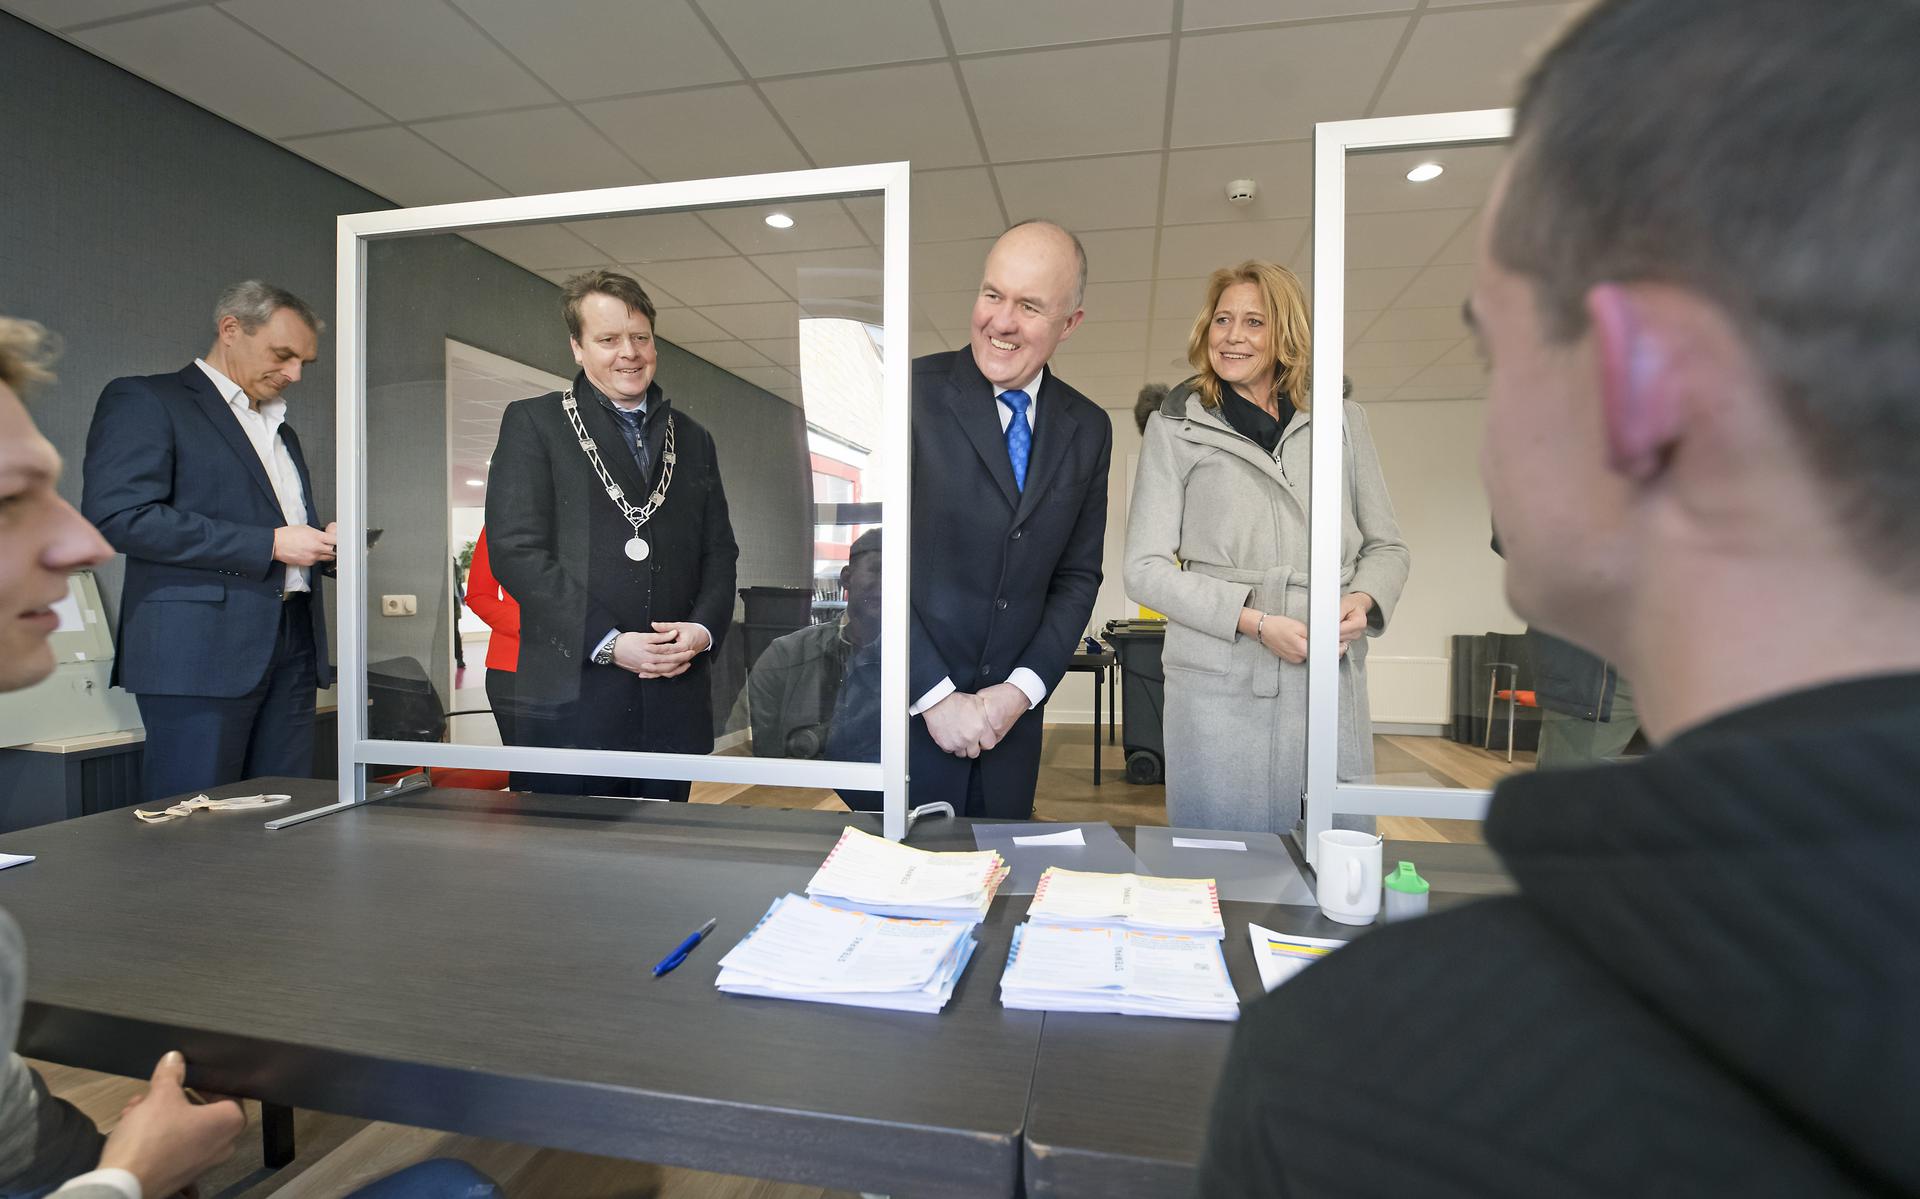 Commissaris van de Koning Arno Brok, dijkgraaf Luzette Kroon en burgemeester Johannes Kramer (l) in gesprek met Arjen Vellema (op de rug gezien) van stembureau De Waadwente in Dokkum. 